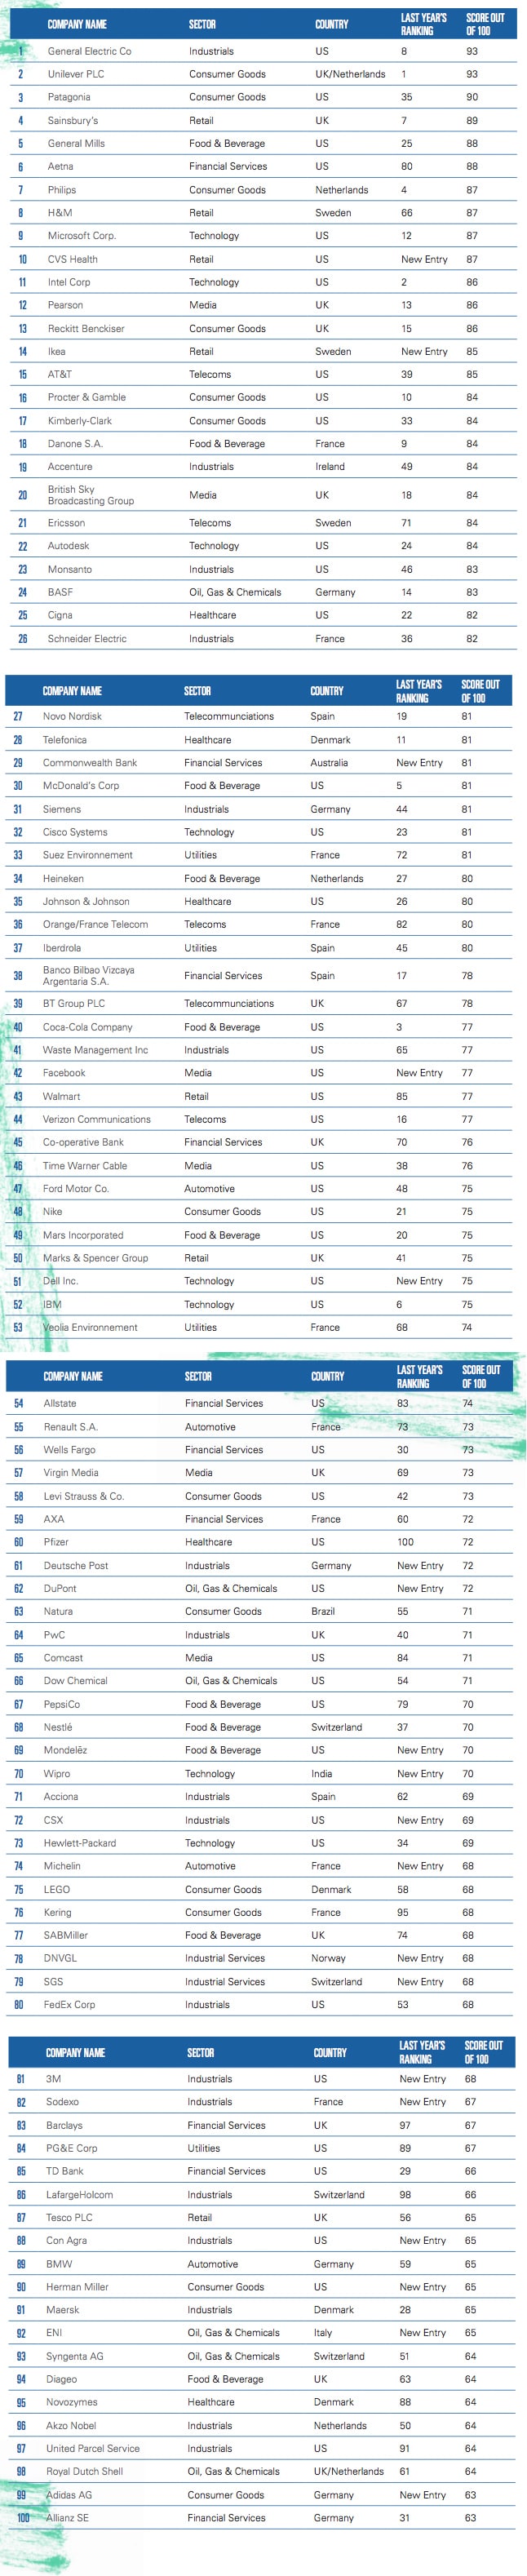 TOP-100-entreprises-medias-sociaux